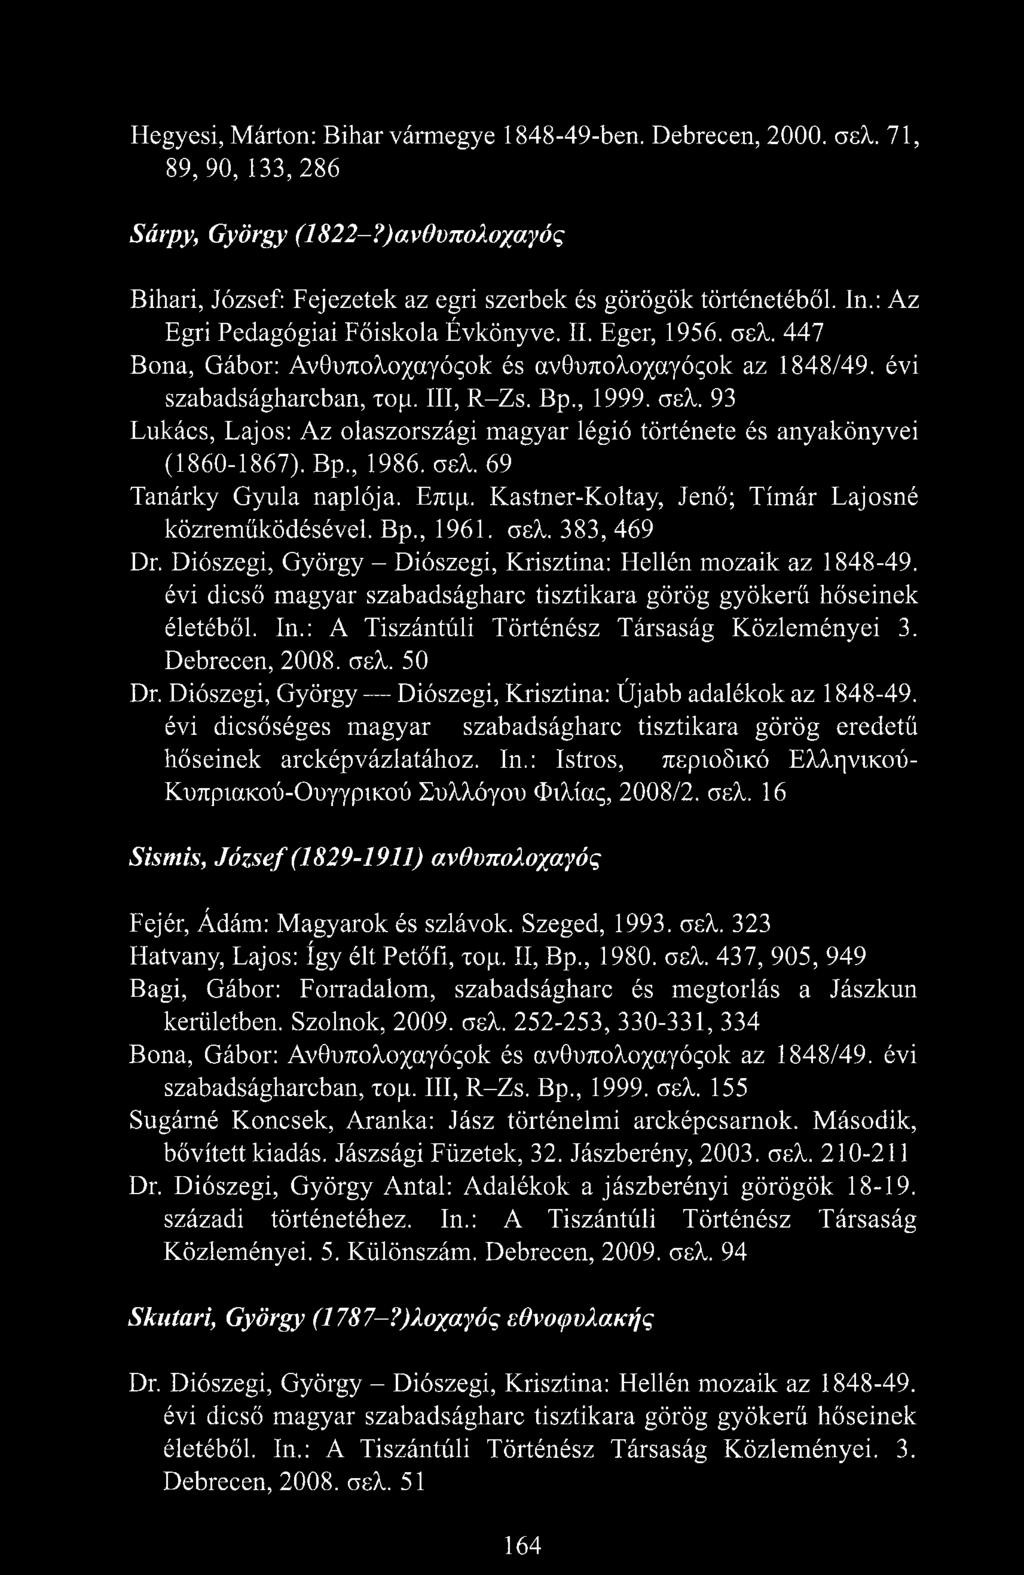 B p, 1986. σελ. 69 Tanárky Gyula naplója. Επιμ. Kastner-Koltay, Jenő; Tímár Lajosné közreműködésével. B p, 1961. σελ. 383, 469 Dr. Diószegi, György - Diószegi, Krisztina: Hellén mozaik az 1848-49.